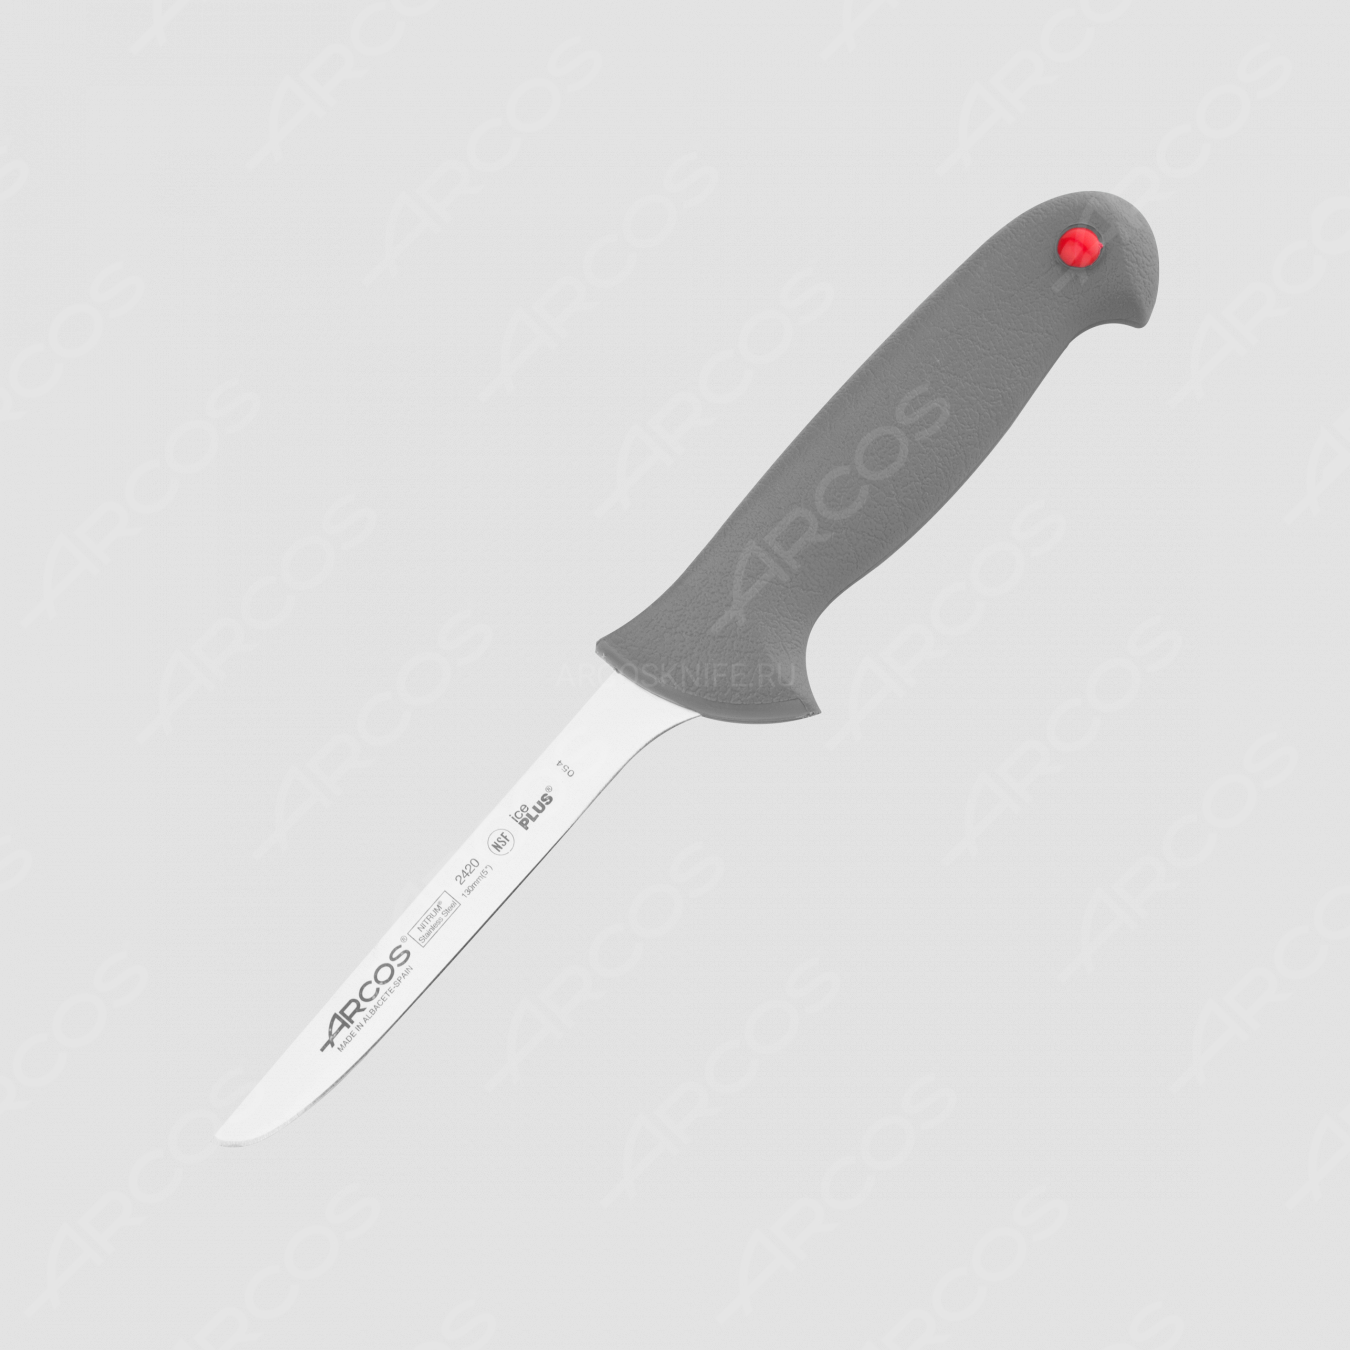 Нож кухонный обвалочный 13 см, серия Colour-prof, ARCOS, Испания